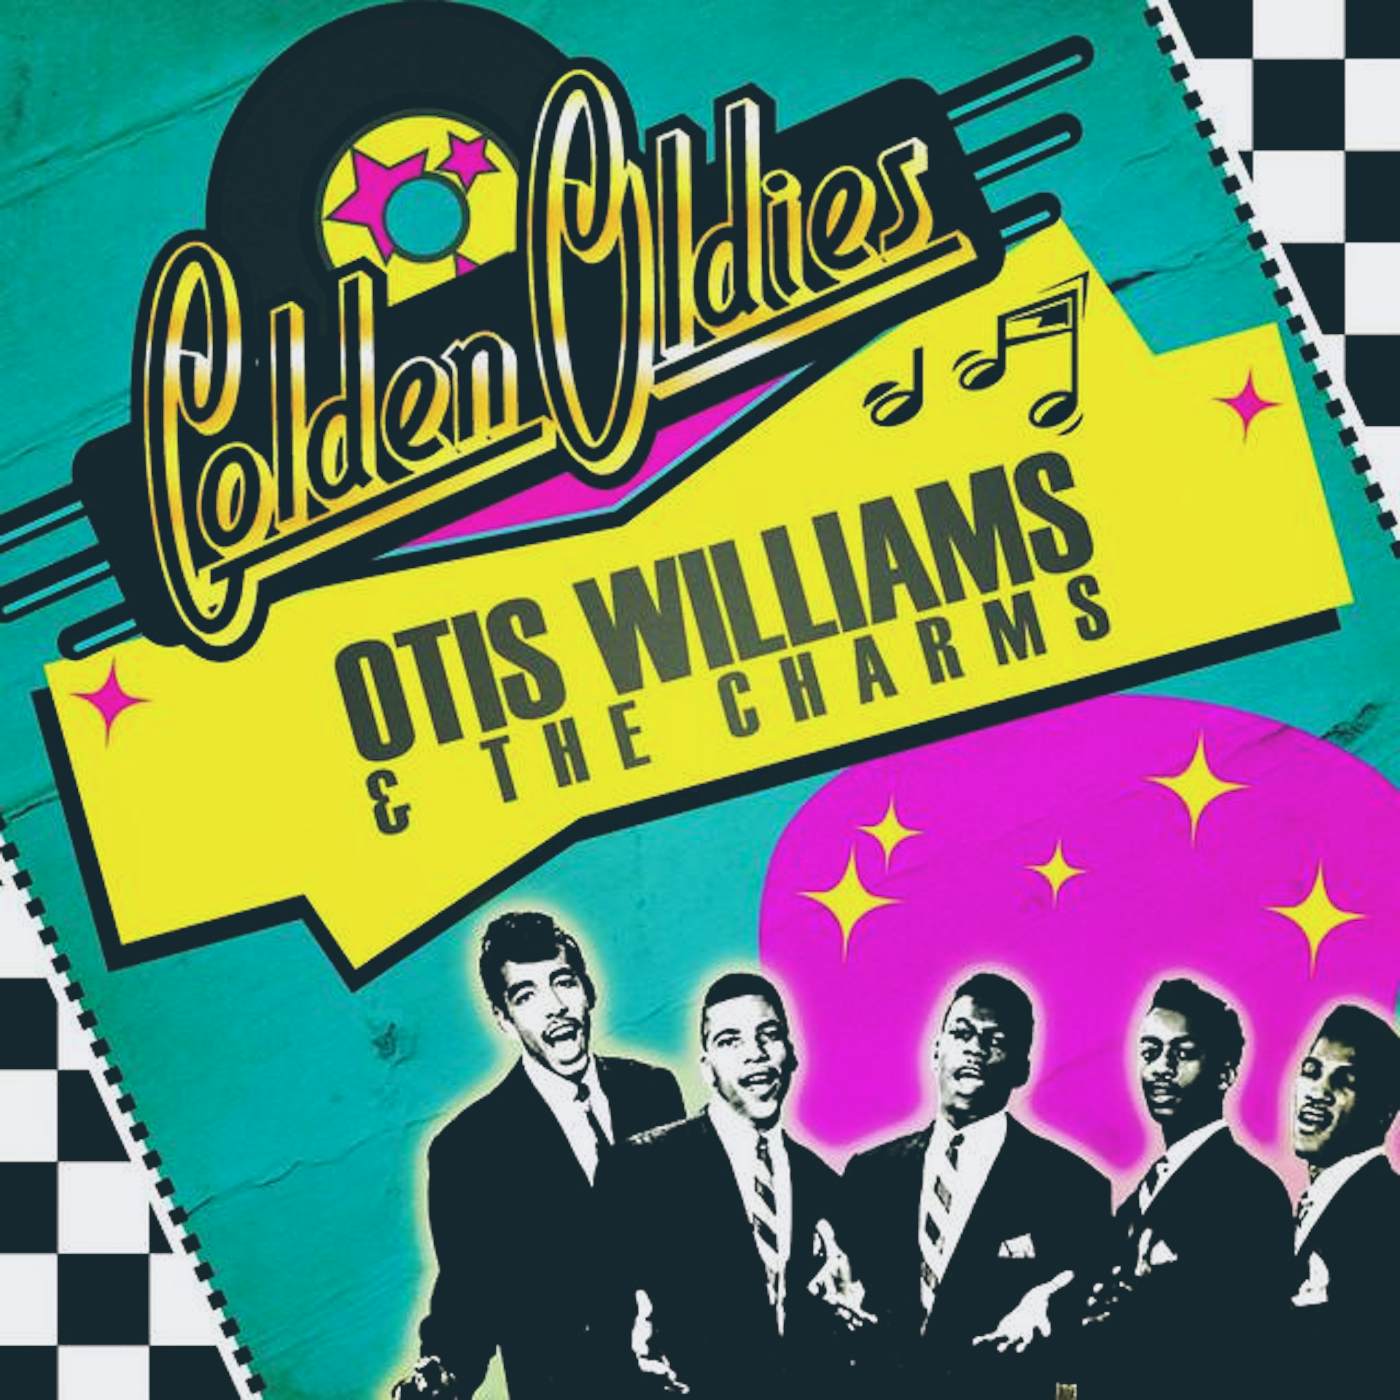 Otis Williams & The Charms